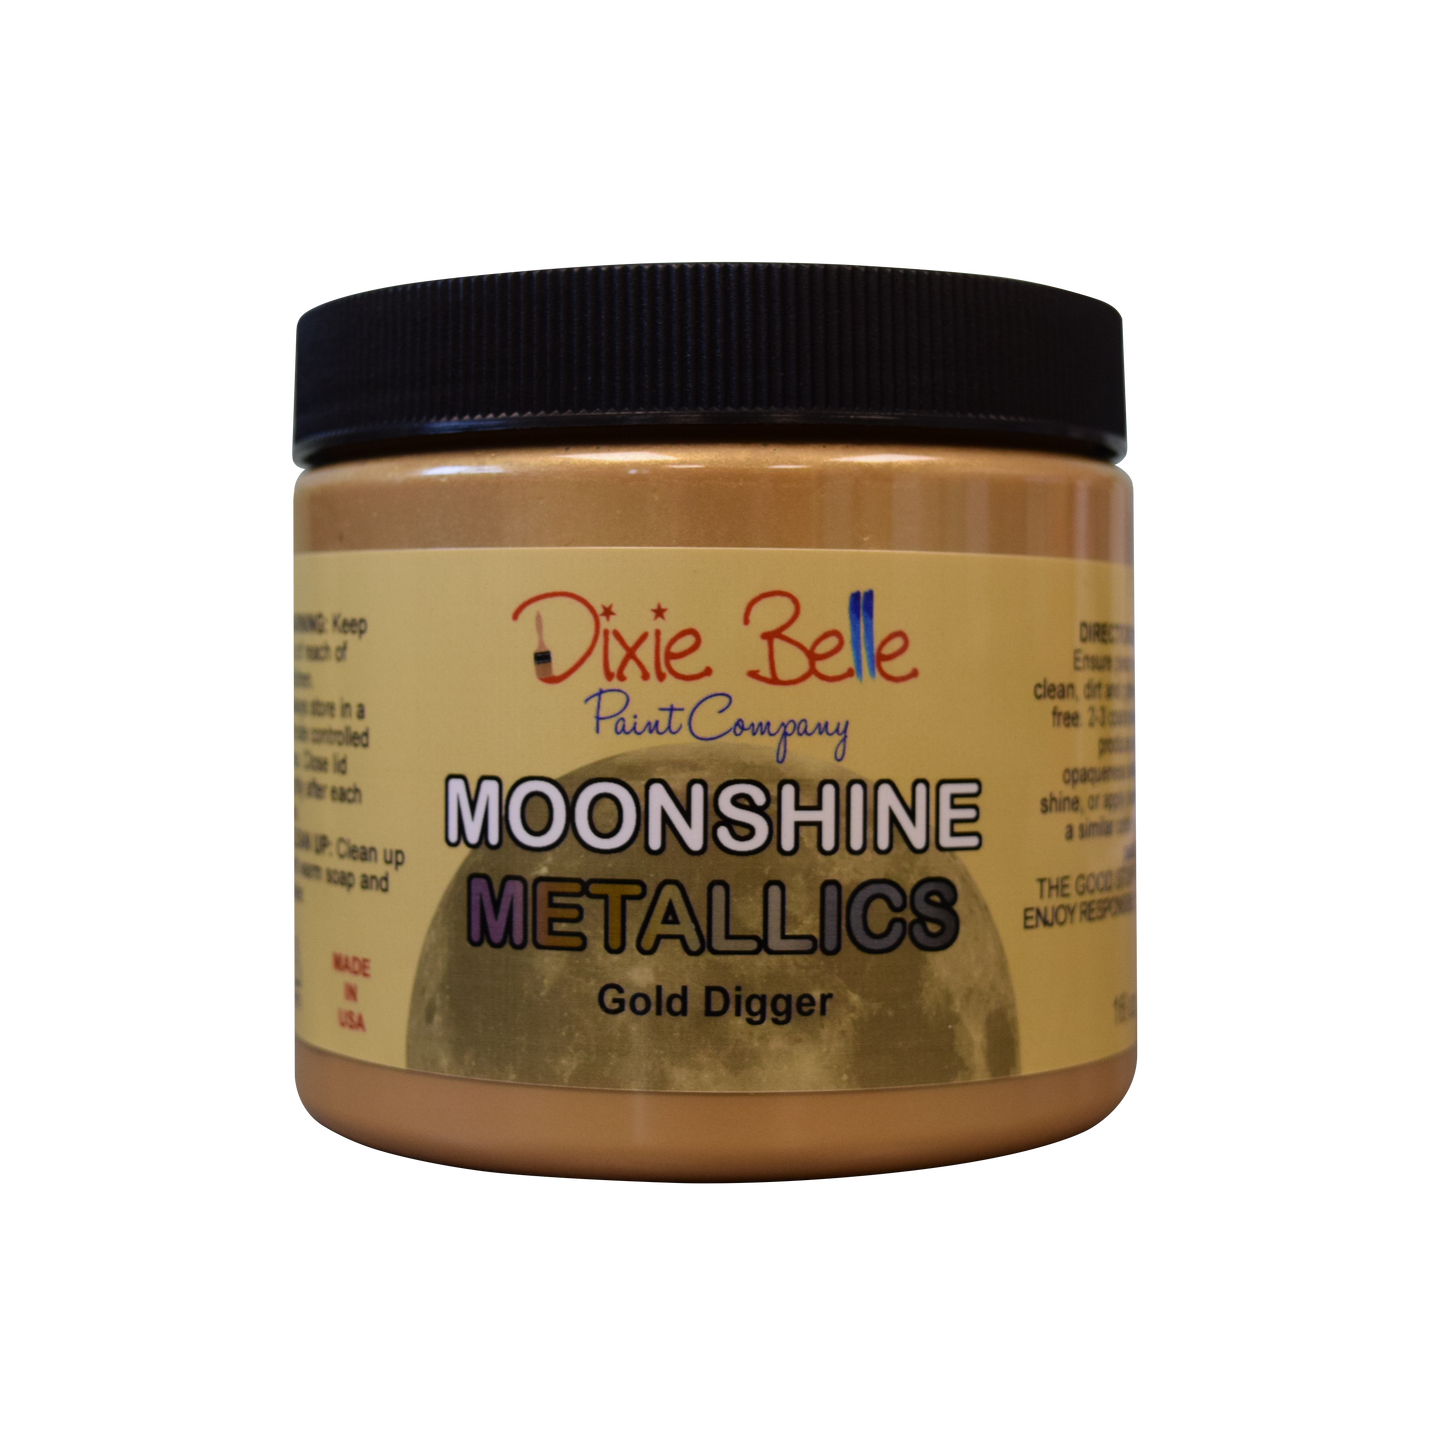 Moonshine Metallics